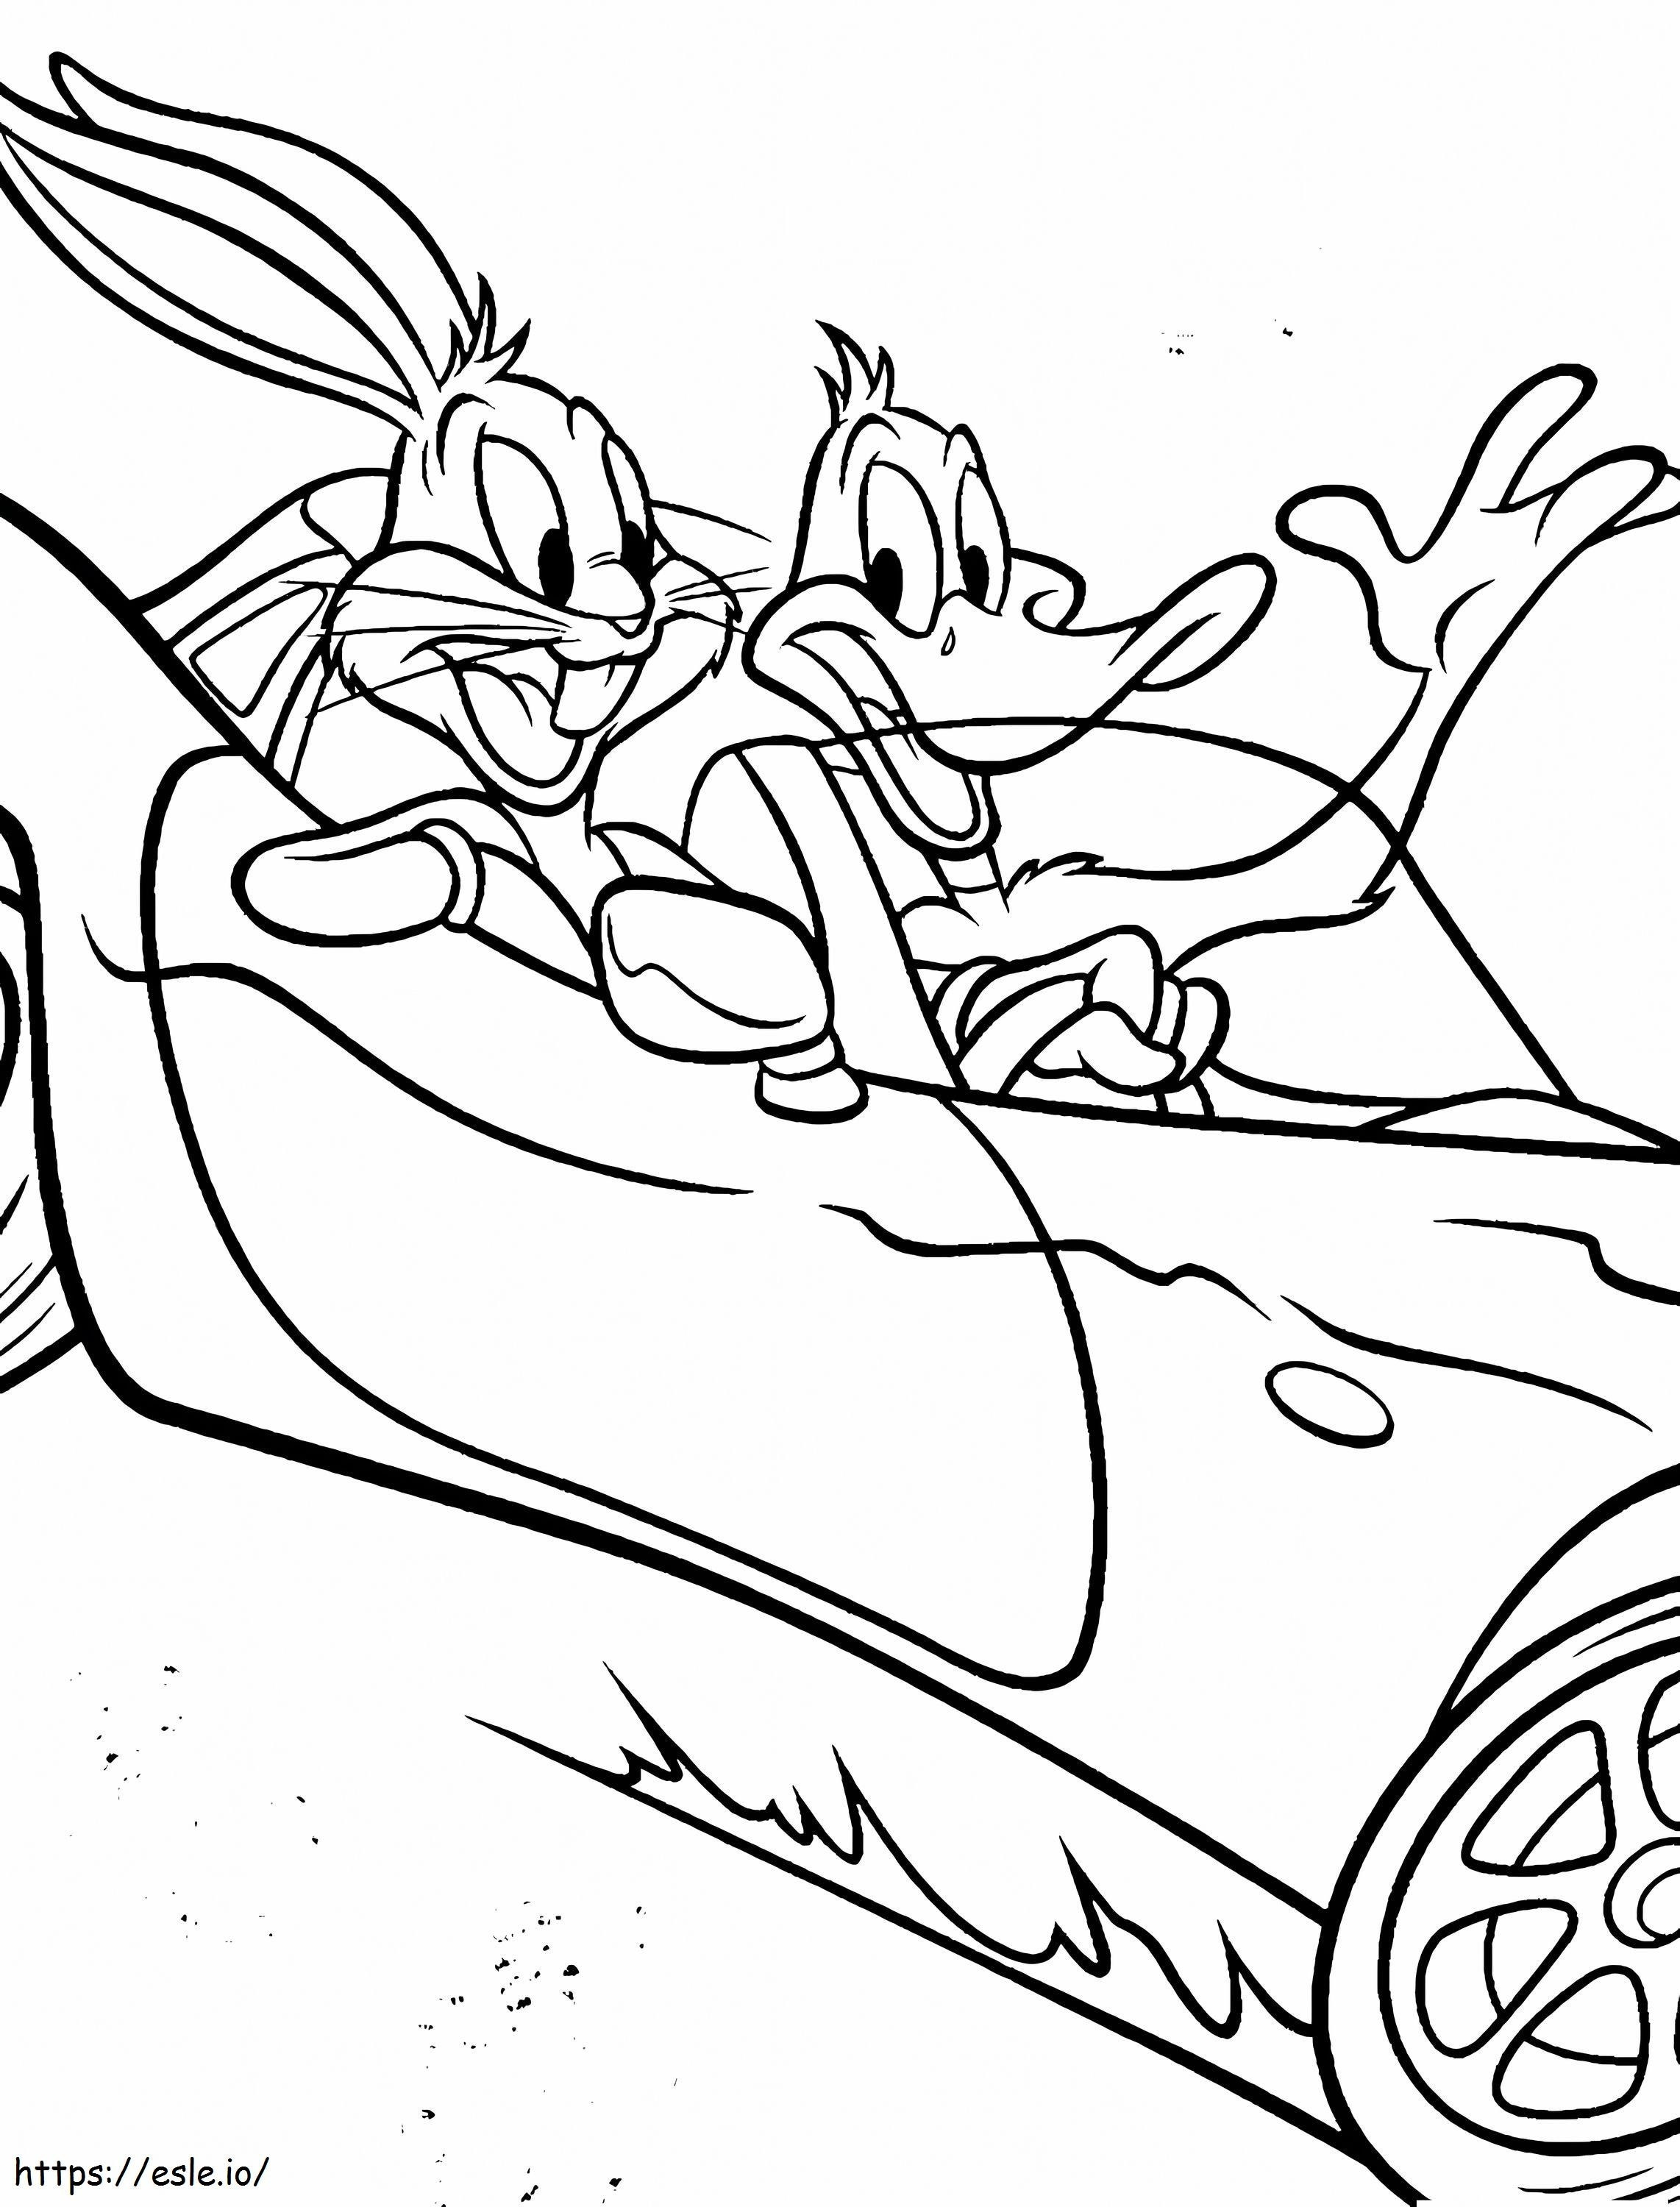 Daffy Duck și Bugs Bunny în mașină de colorat